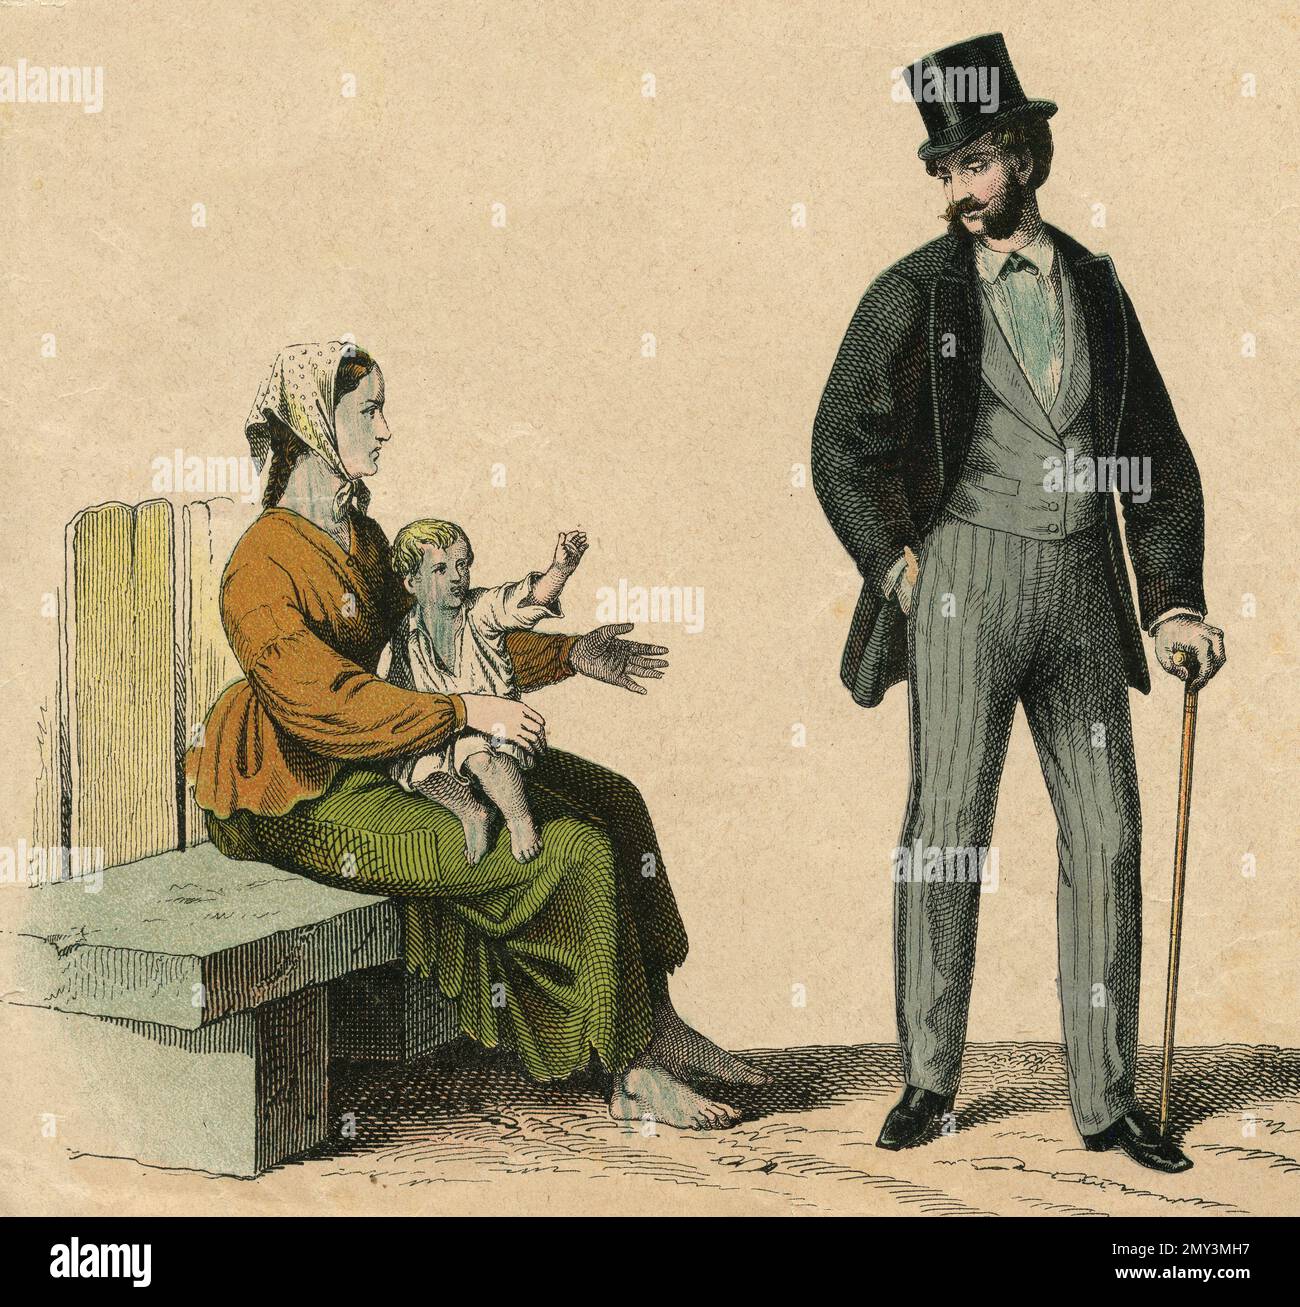 Dessin de mode: Le riche et le pauvre, illustration de couleur, 1800s Banque D'Images